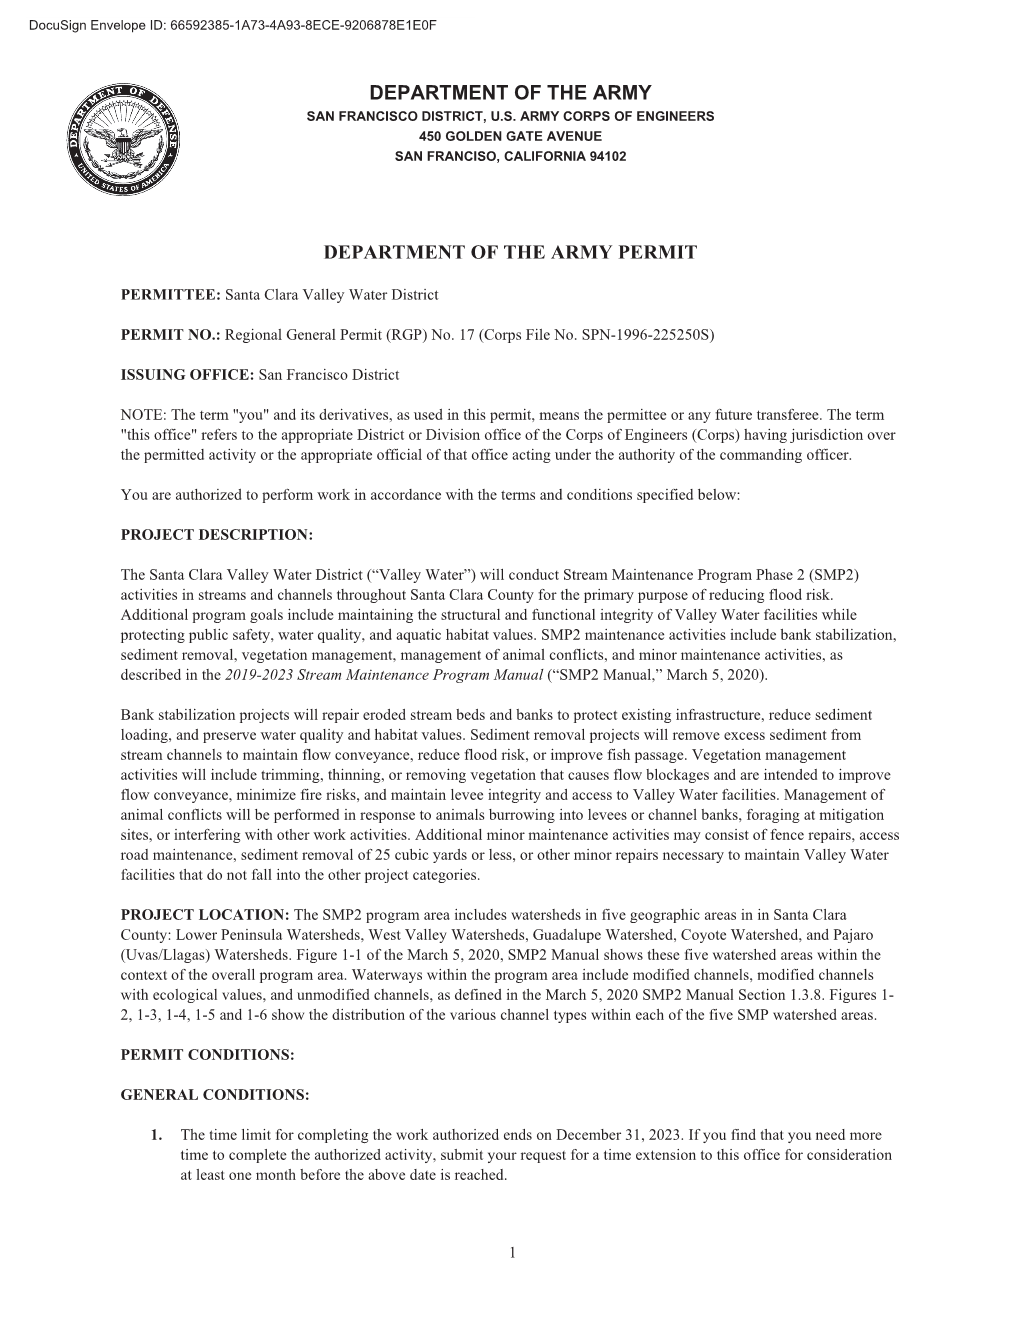 Department of the Army Department of the Army Permit